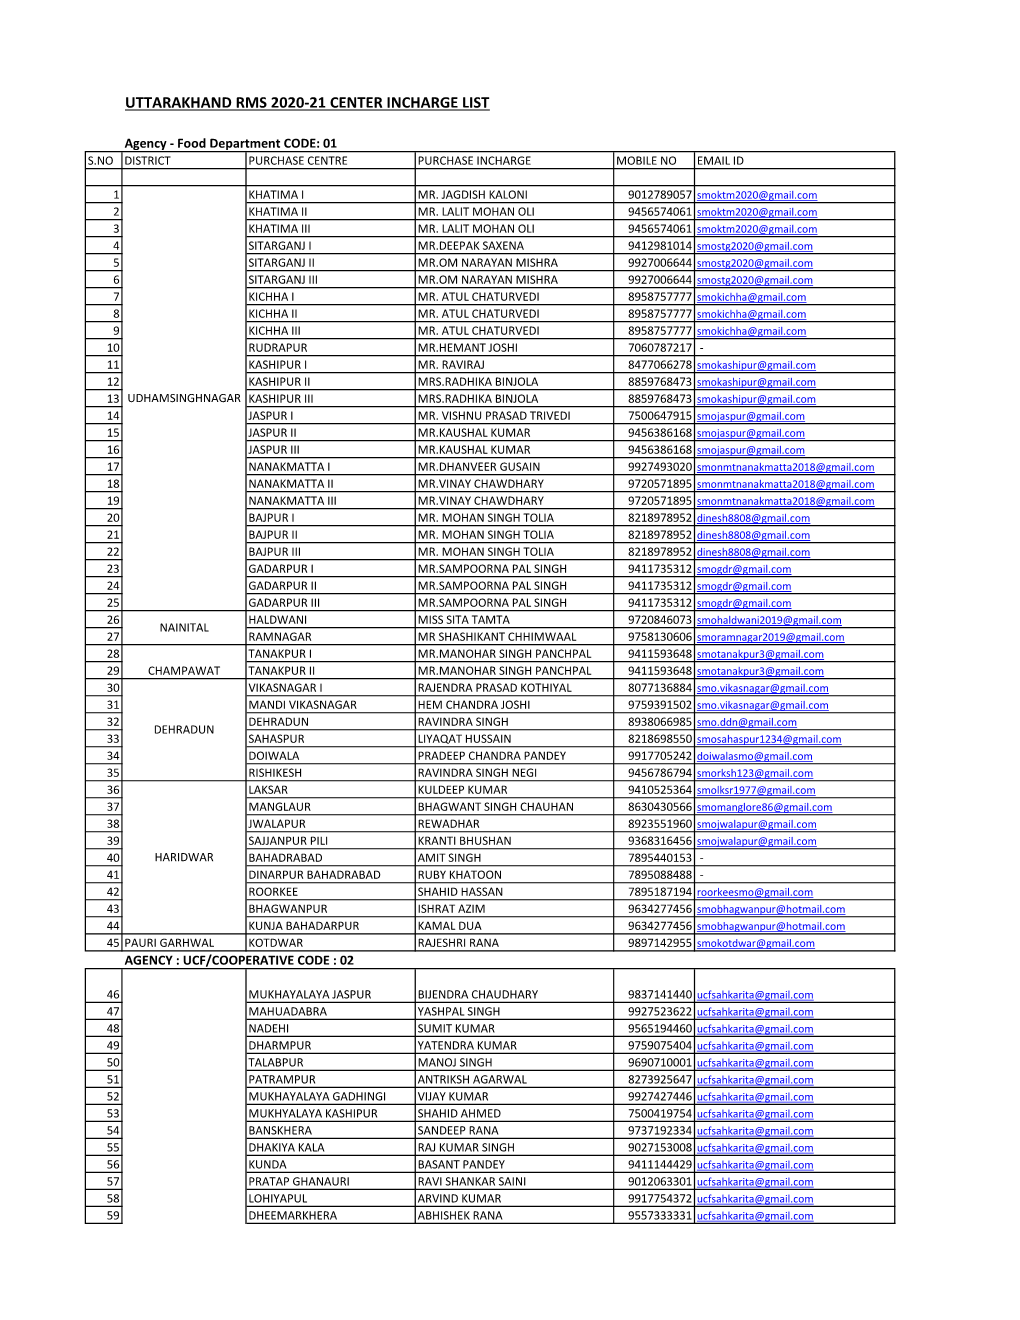 Uttarakhand Rms 2020-21 Center Incharge List